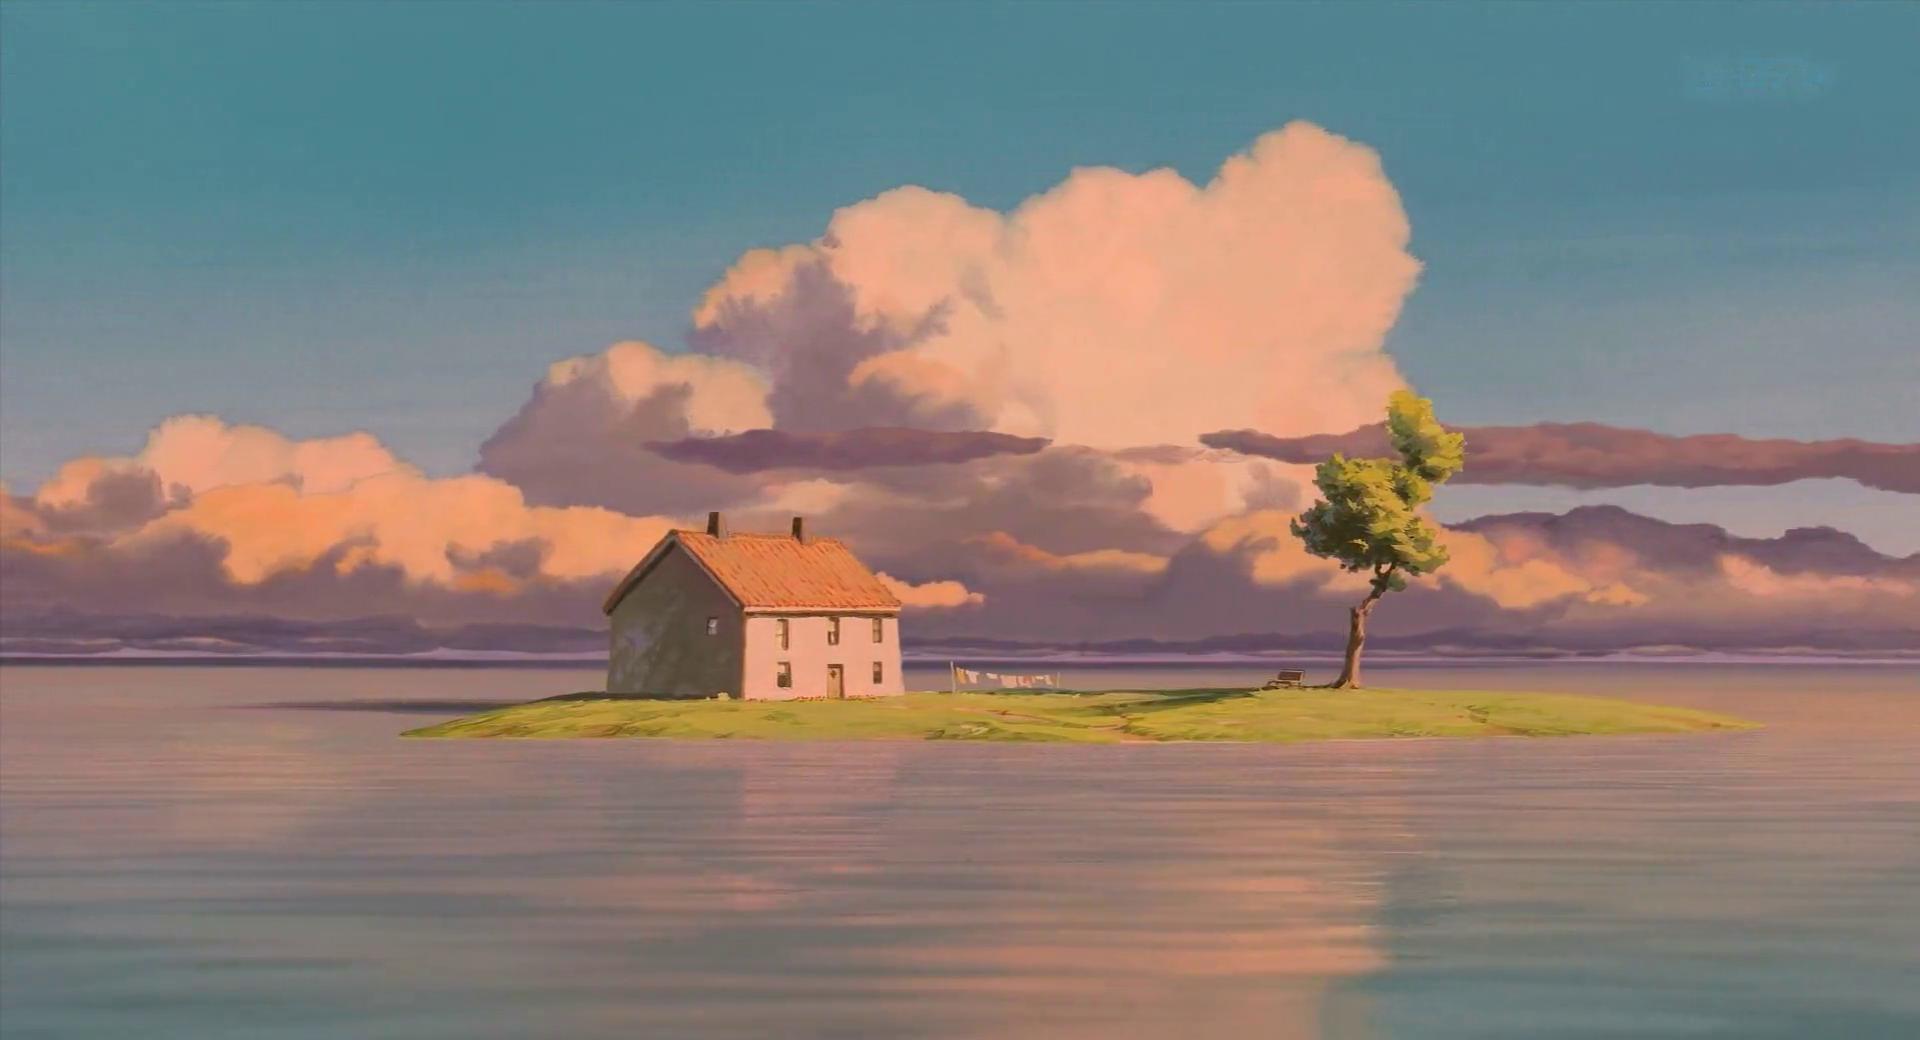 Studio Ghibli Scenery: Để bắt đầu một chuyến phiêu lưu đầy mê hoặc, không gì tuyệt hơn là đến với Studio Ghibli Scenery. Từ những cánh đồng hoa tuyệt đẹp, những con đường rợp bóng, đến những khu rừng rậm, những cảnh quan ở đây sẽ tạo nên một thế giới hoàn hảo tình cảm và cổ điển.